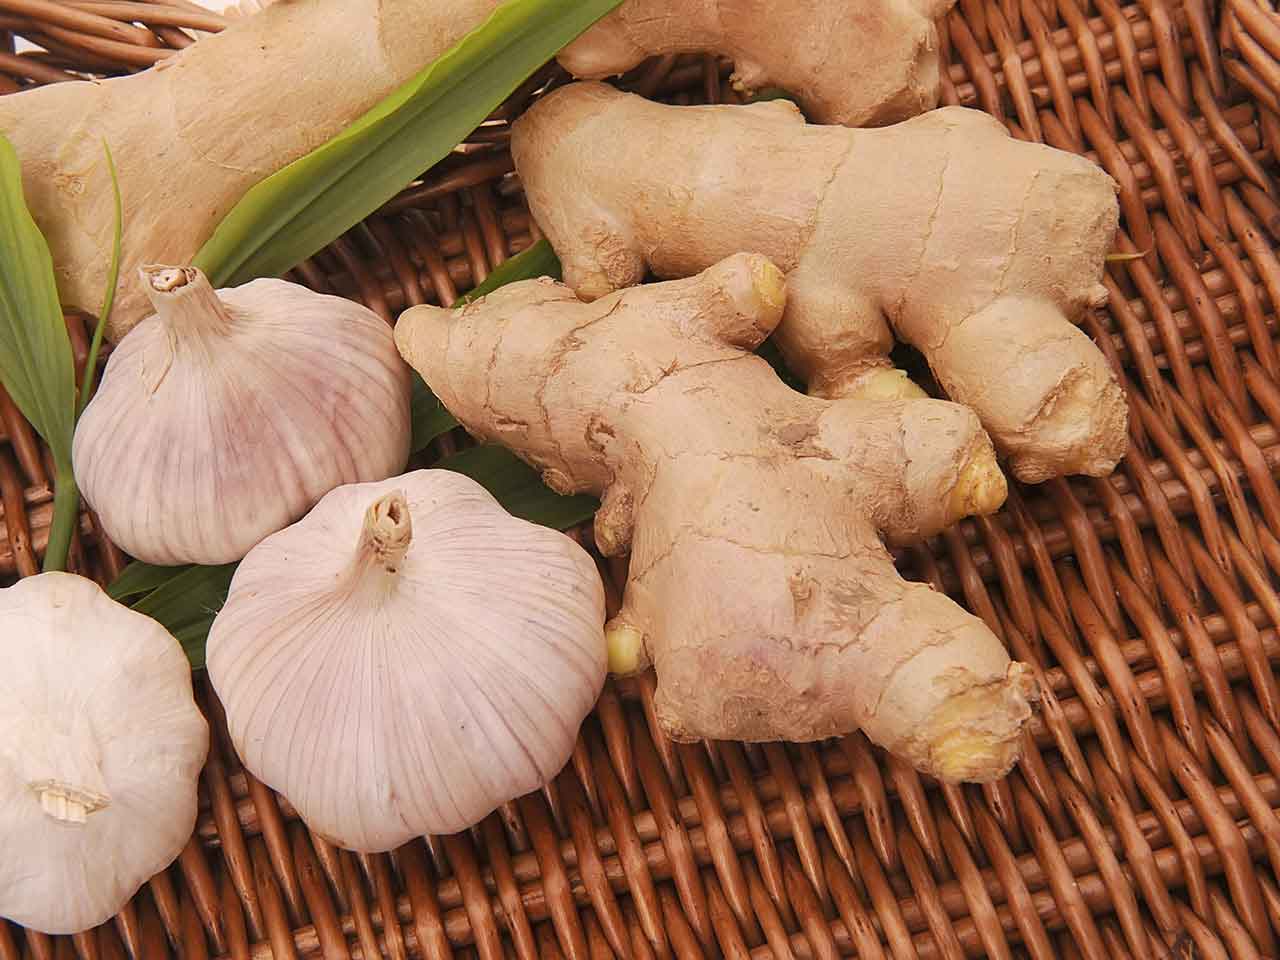 Close up of garlic bulbs and ginger